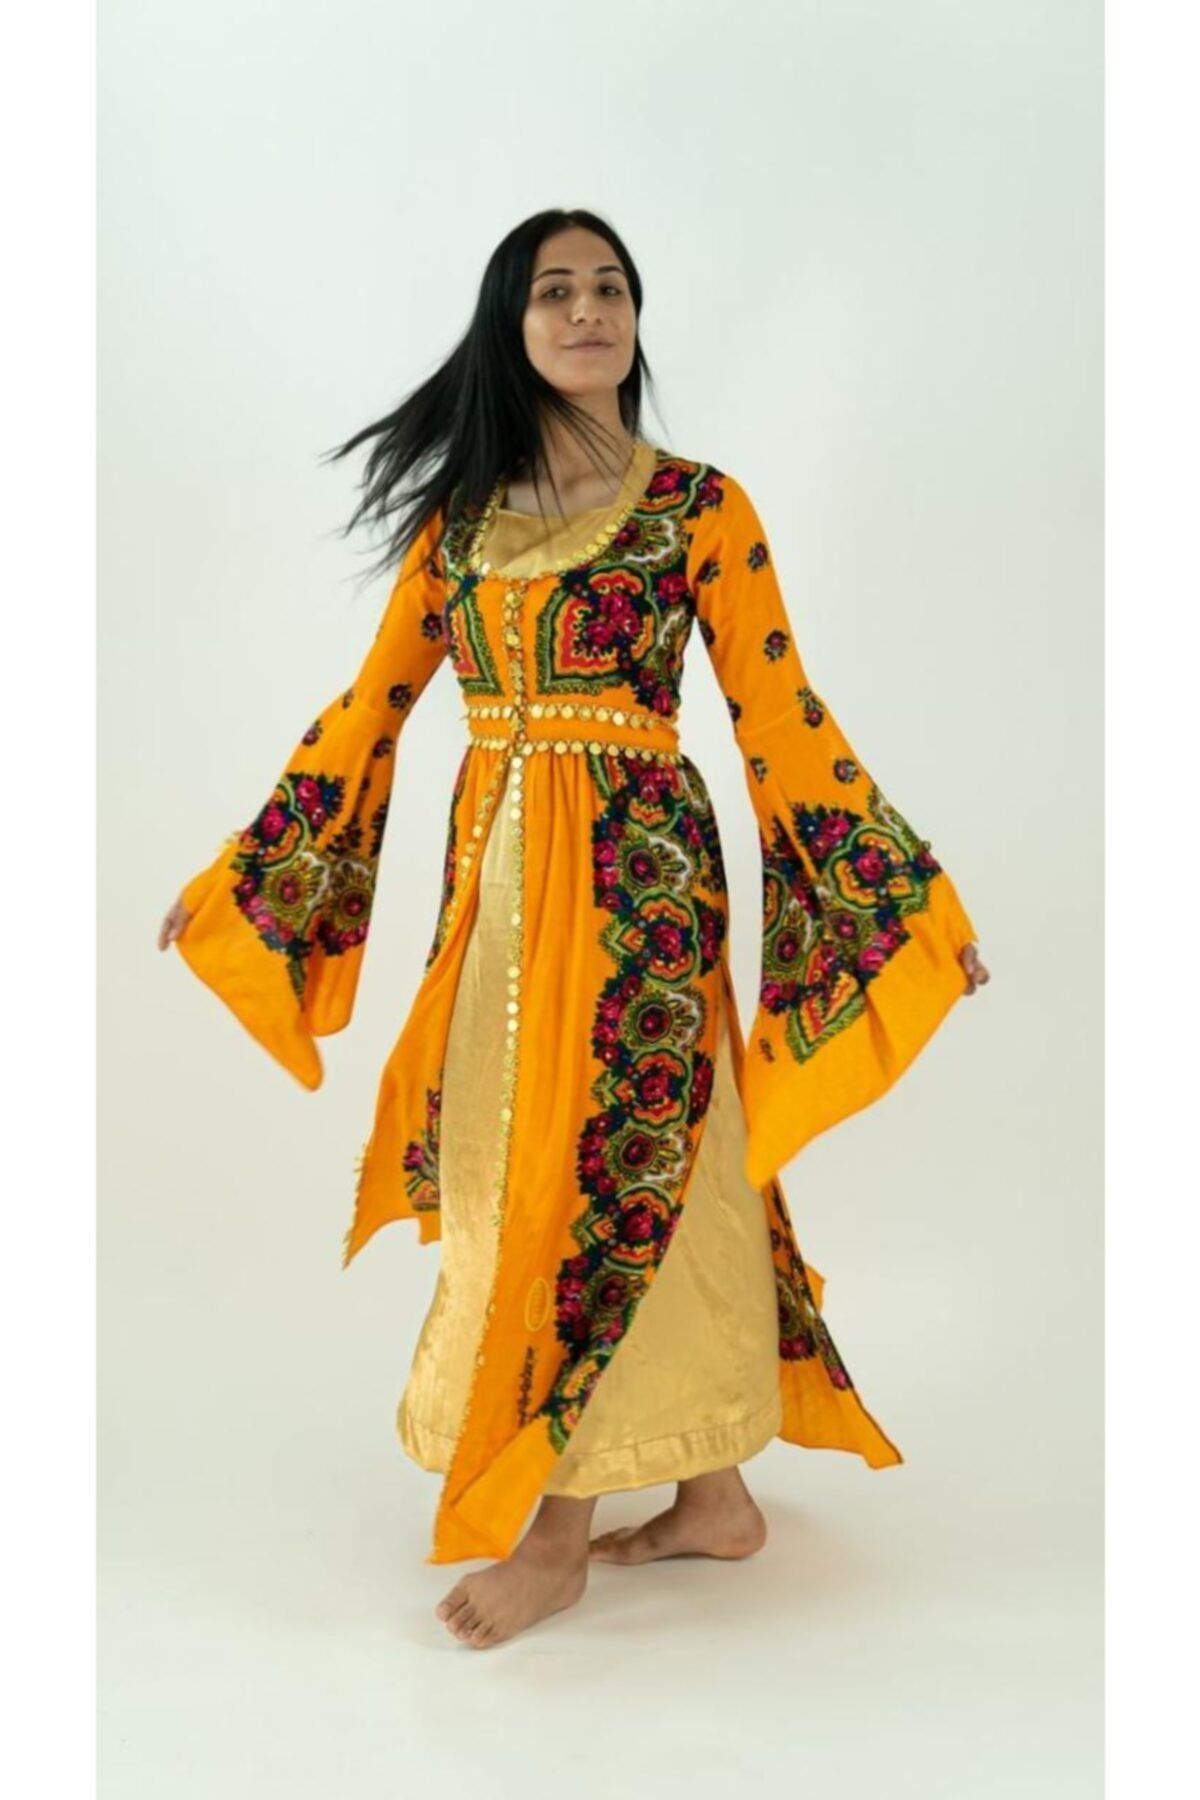 romans yöresel Kadın Sarı Yöresel Kıyafet